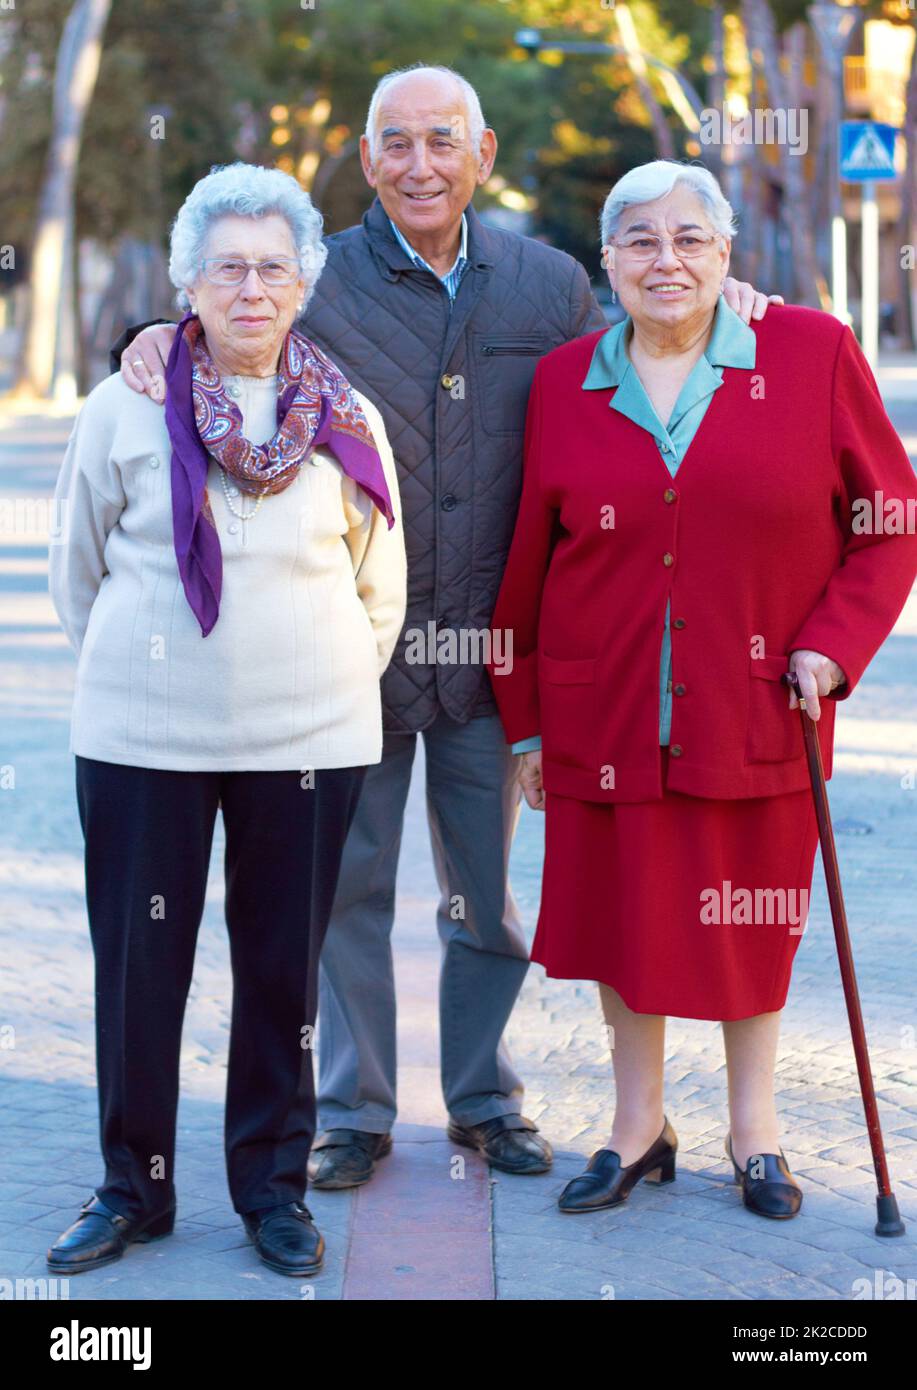 Anmutig älter werden. Porträt von drei älteren Menschen, die im Freien stehen. Stockfoto